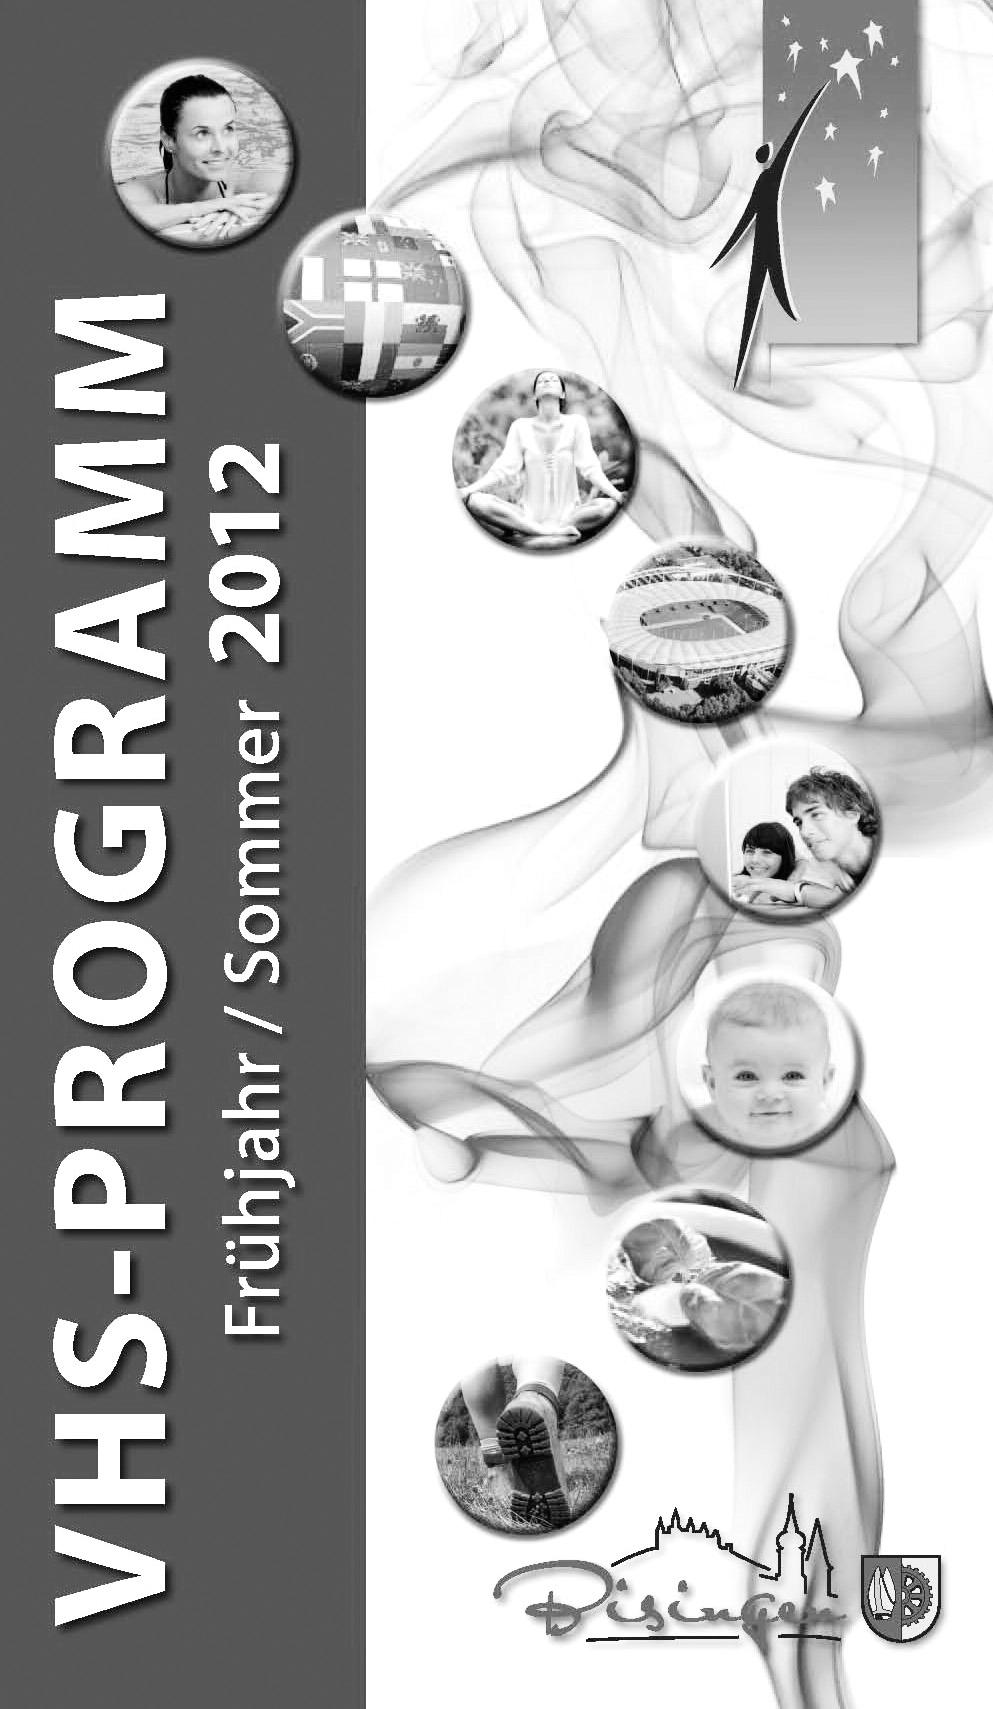 Amtsblatt der Gemeinde Bisingen 2 ALLGEMEINE MITTEILUNGEN Das neue VHS Programm Frühjahr/Sommer 2012 ist da!